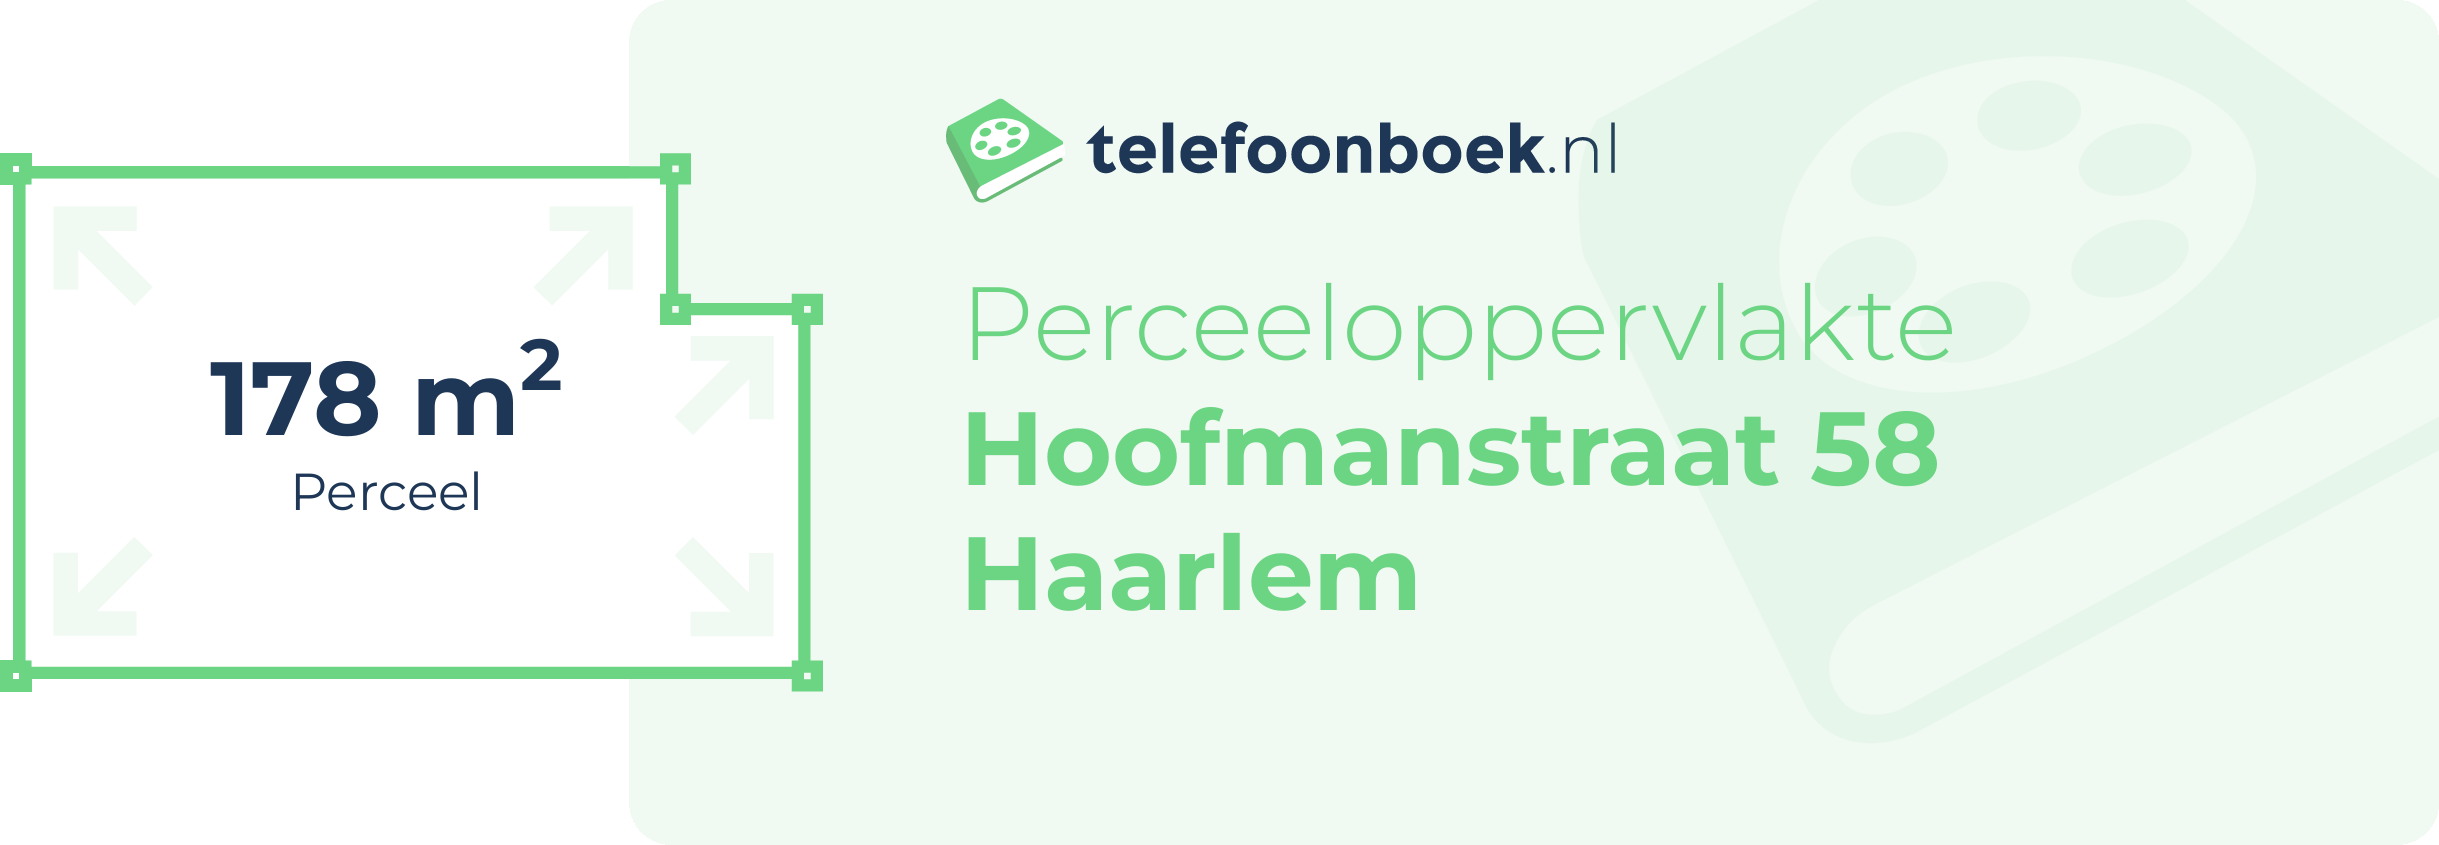 Perceeloppervlakte Hoofmanstraat 58 Haarlem